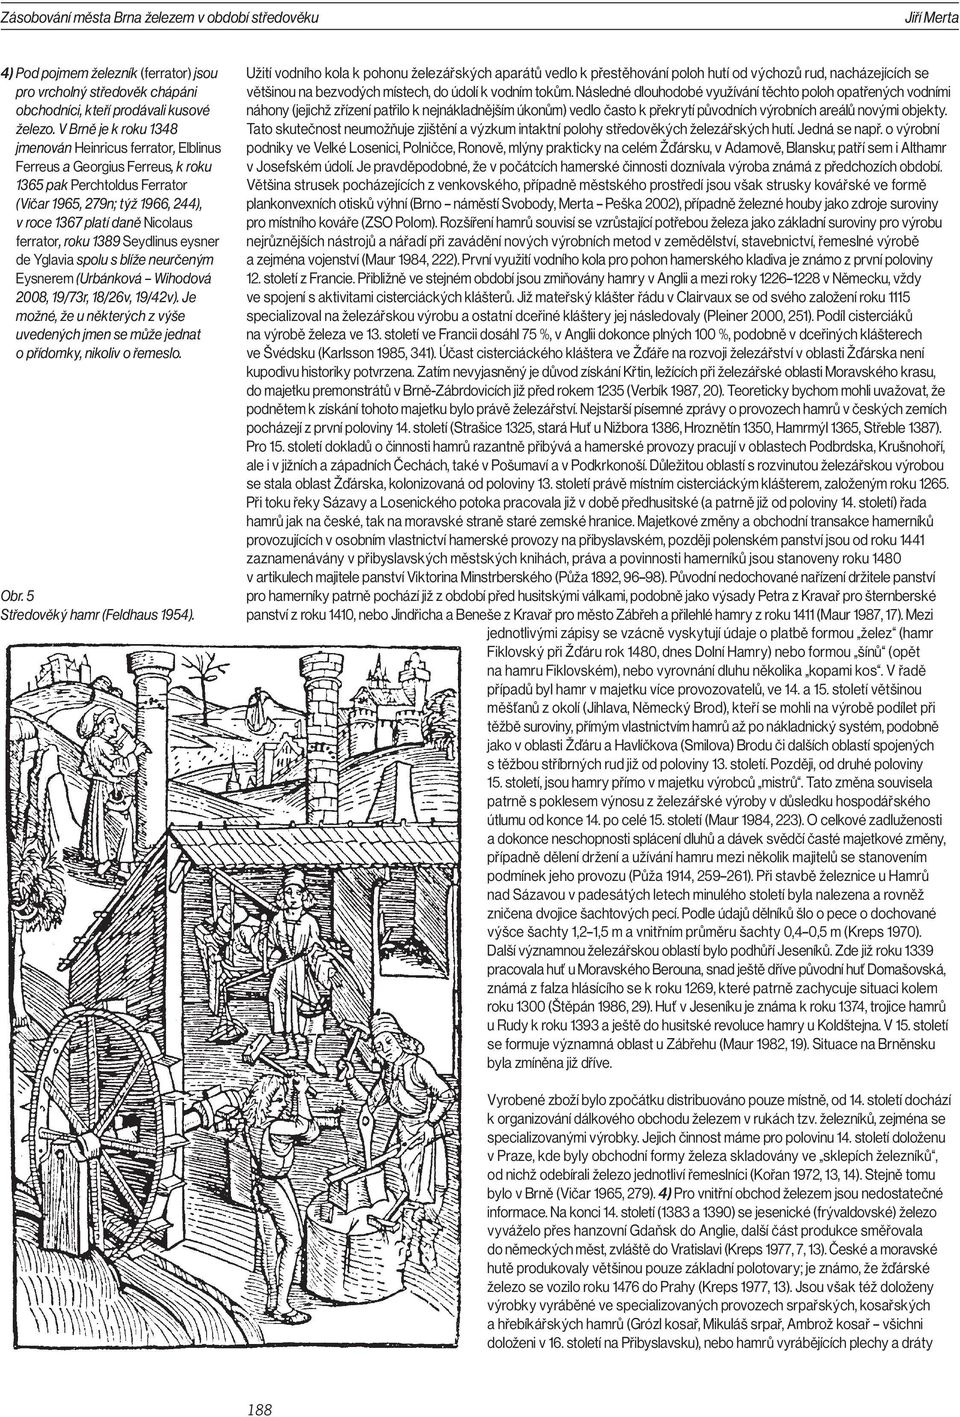 ferrator, roku 1389 Seydlinus eysner de Yglavia spolu s blíže neurčeným Eysnerem (Urbánková Wihodová 2008, 19/73r, 18/26v, 19/42v).